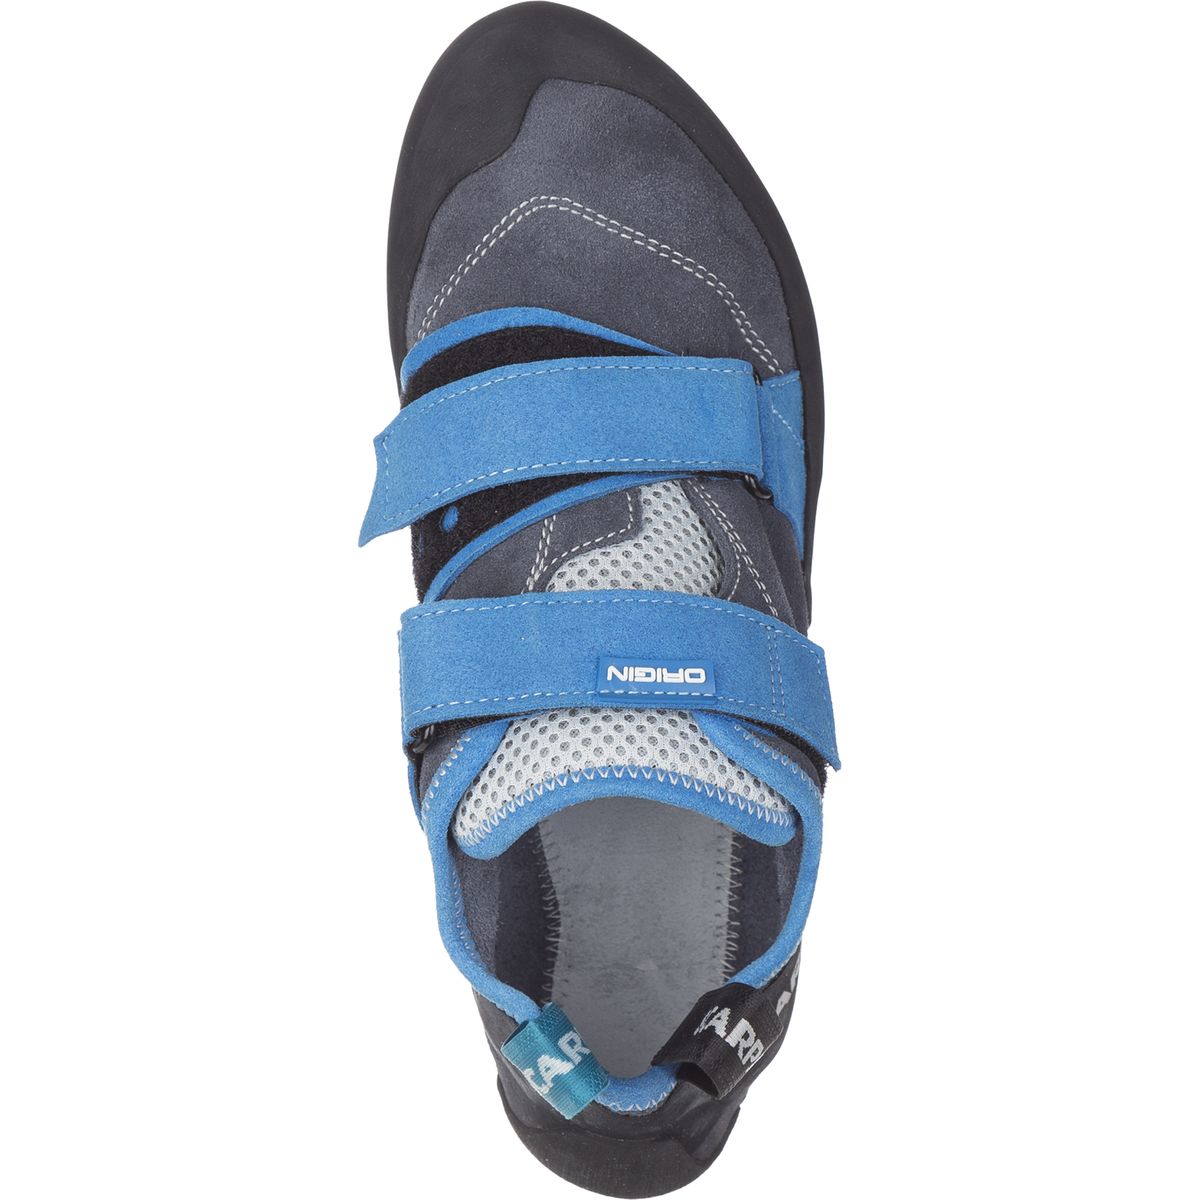 Scarpa Origin Climbing Shoe | Steep \u0026 Cheap